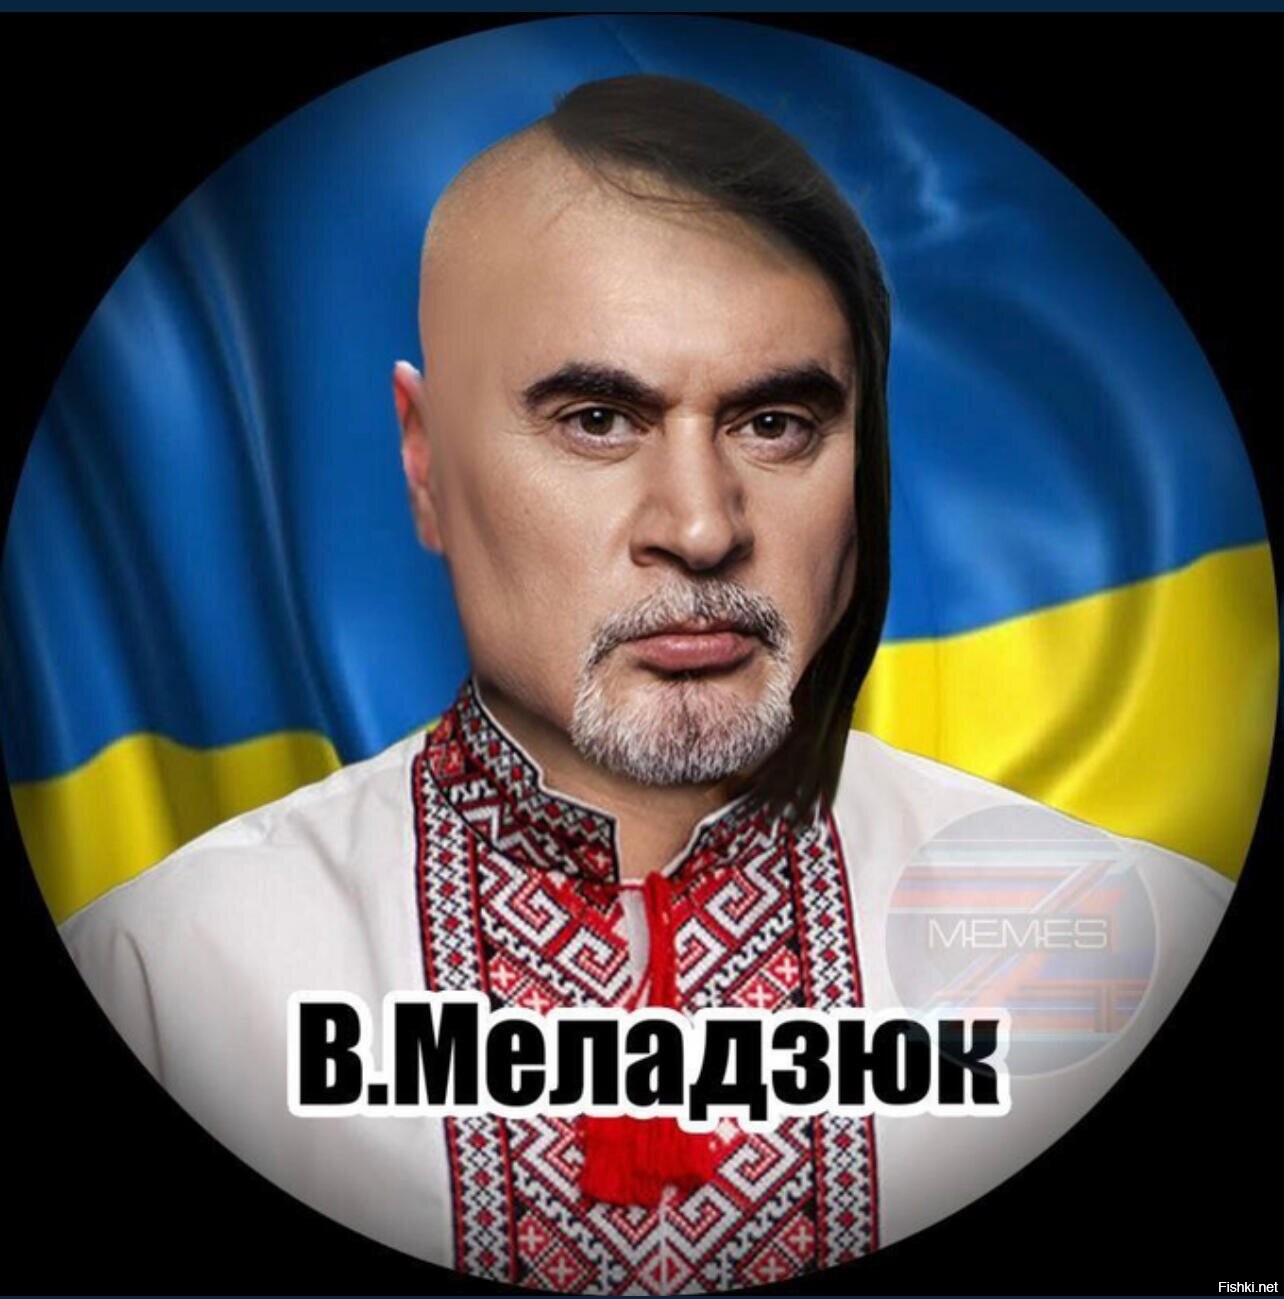 Хохляцкие песни. Украинские Певцы. Меладзе хохол. Меладзе мемы. Лидеры Украины.